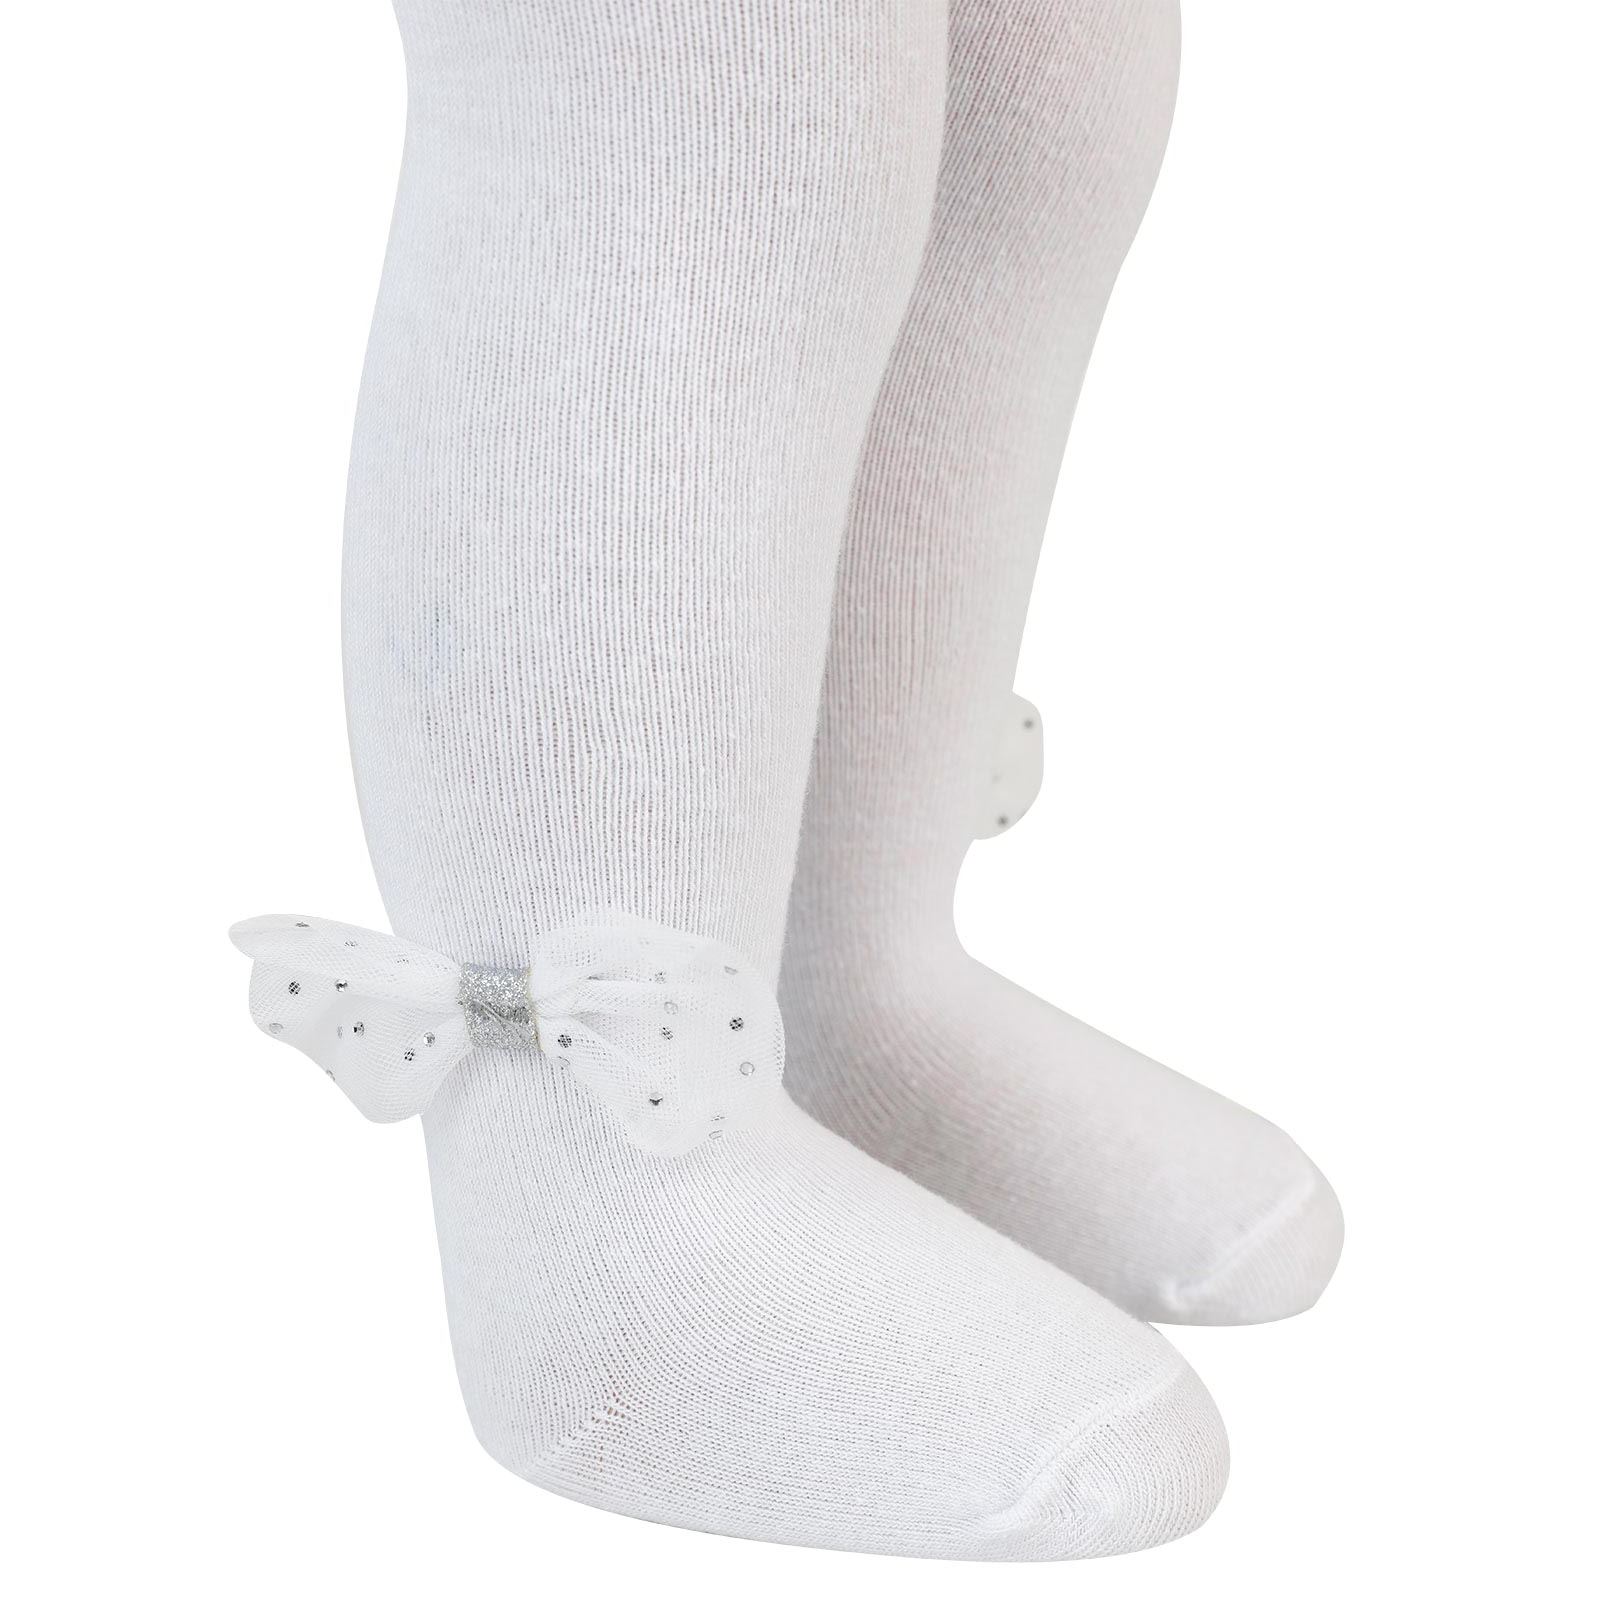 Artı Kız Bebek Bandanalı Külotlu Çorap 0-12 Ay Beyaz